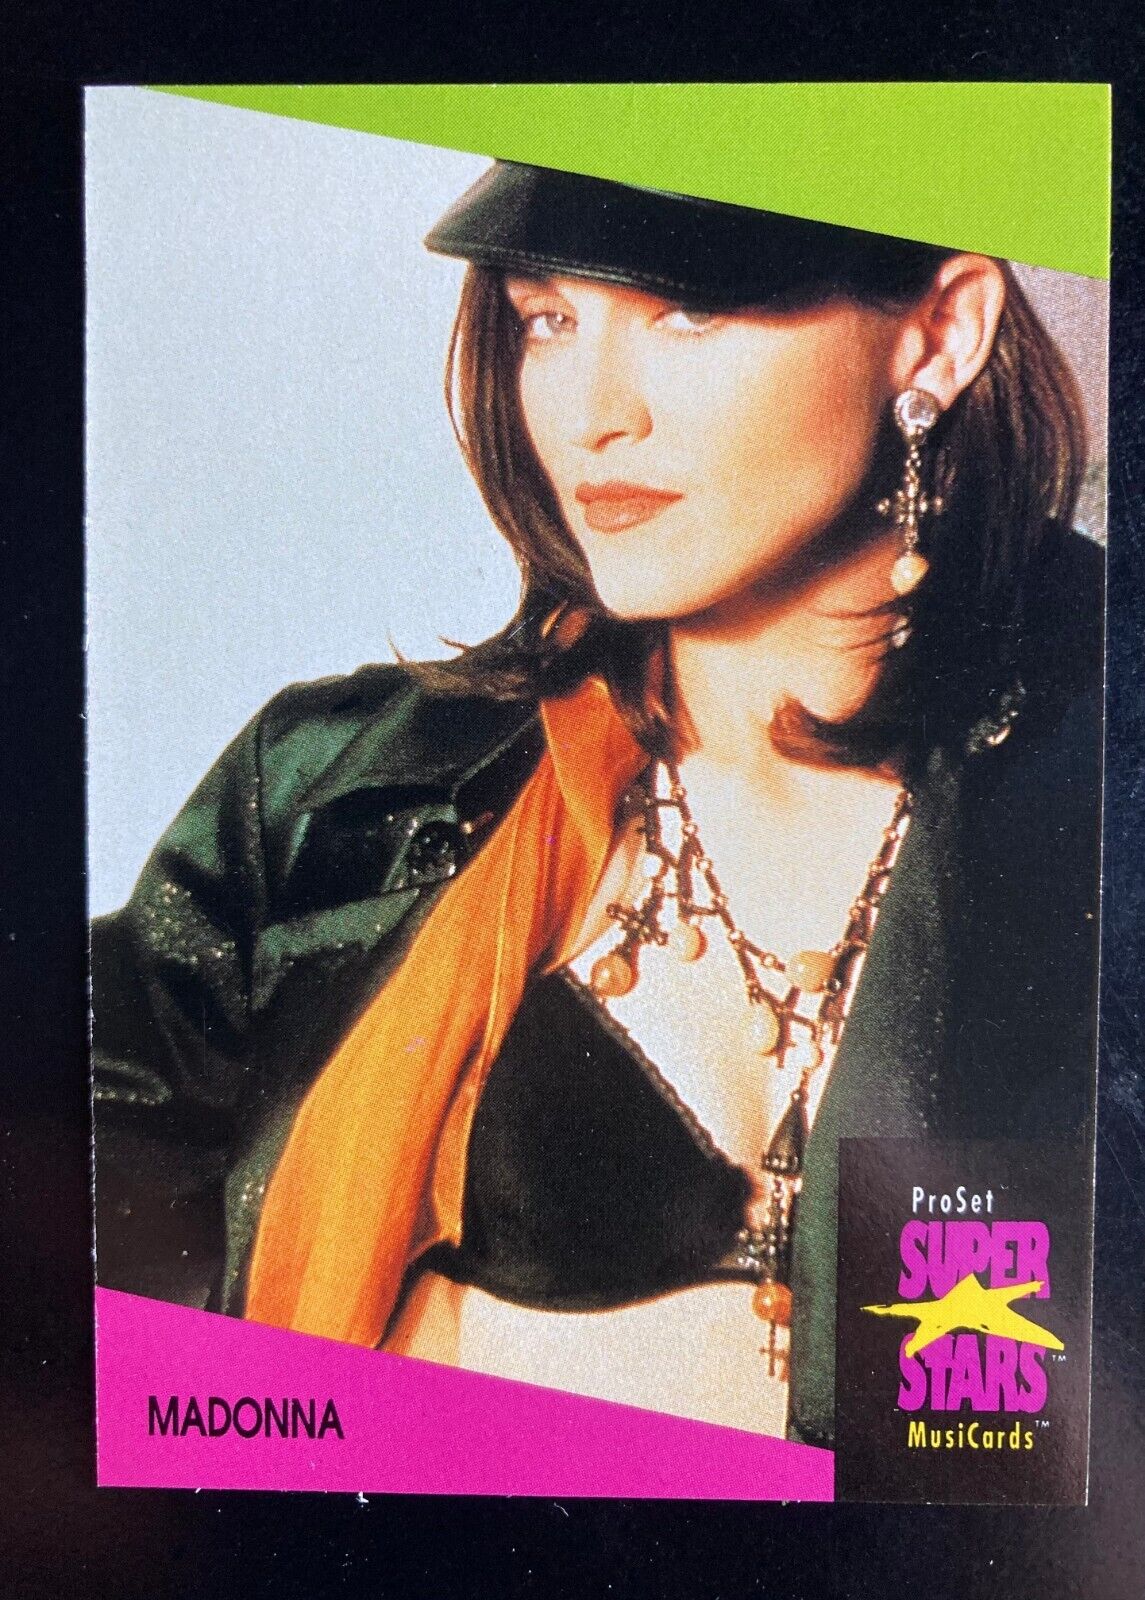 Madonna trading card 1991 Pro Set SuperStars MusiCards UK  #81 